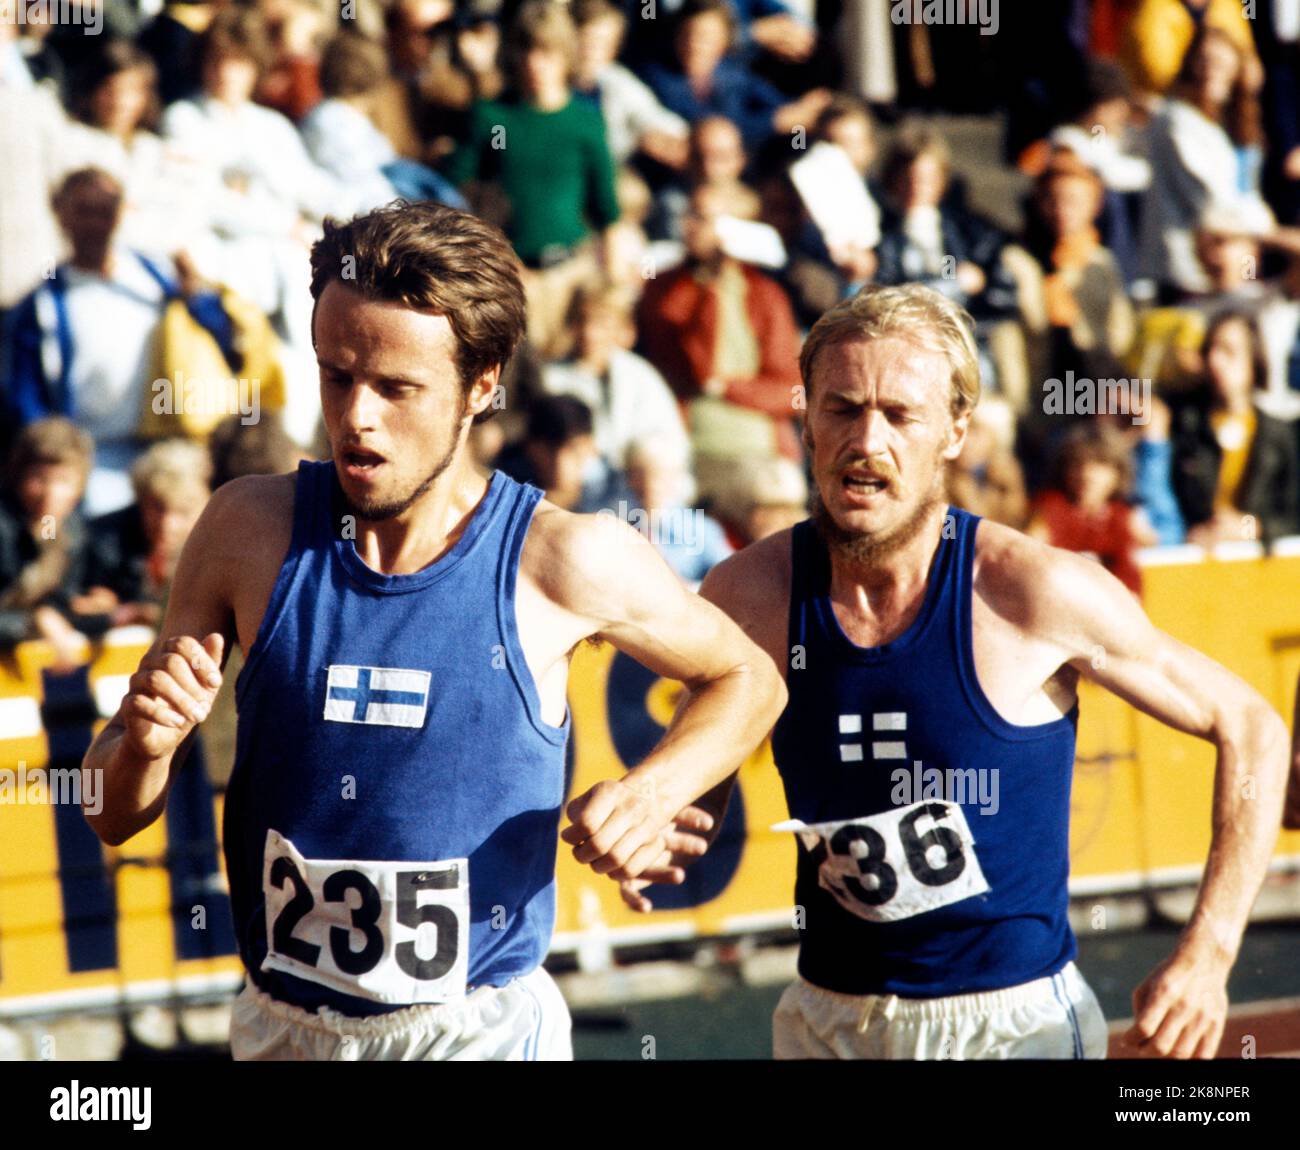 Oslo août 1972 Conférence internationale d'athlétisme à Bislett, pour les maisons pleines. Coureur Lasse Viren de Finlande (Forrest) en action. Il a établi le record nordique de 10 000 mètres avec un temps de 27.52.4. PHOTO: SAGEN / PIFTS CENTRE / NTB Banque D'Images